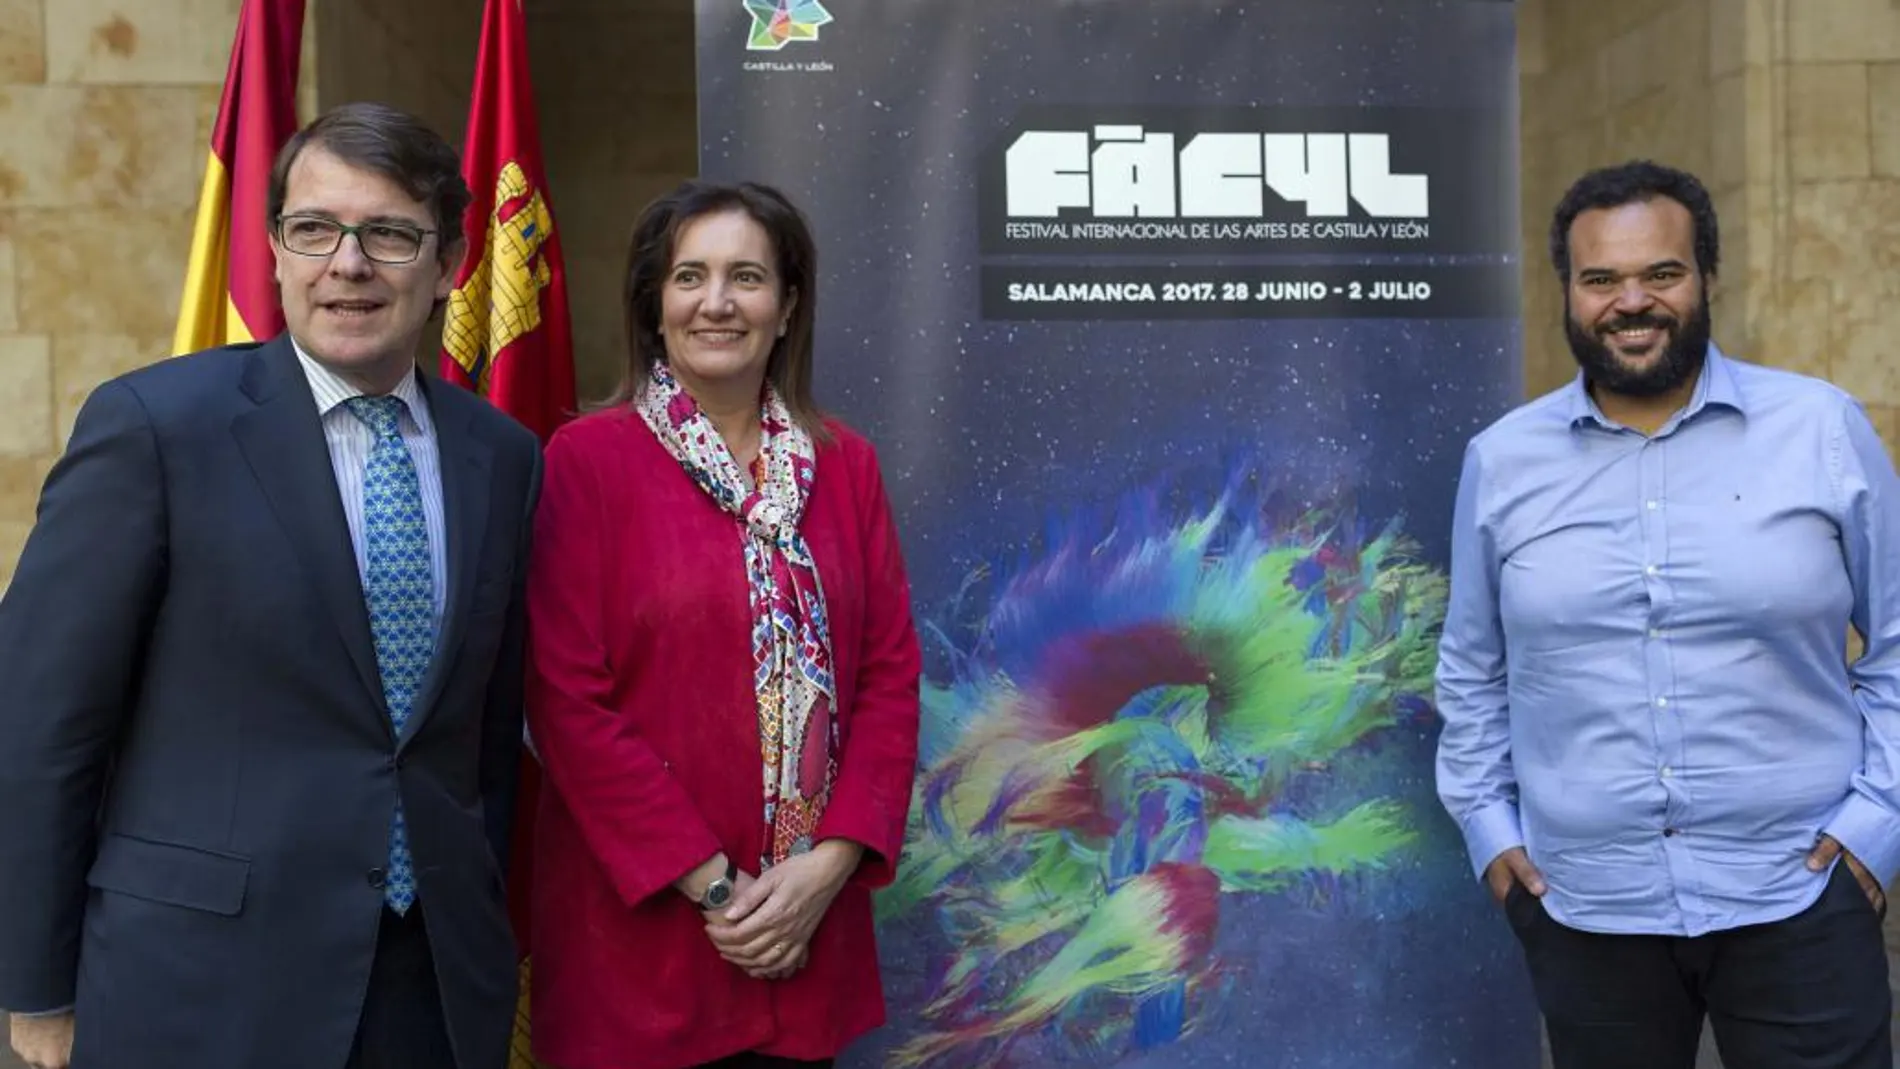 El alcalde Alfonso Fernández Mañueco, la consejera María Josefa García Cirac y Carlos Jean presentan el Fàcyl